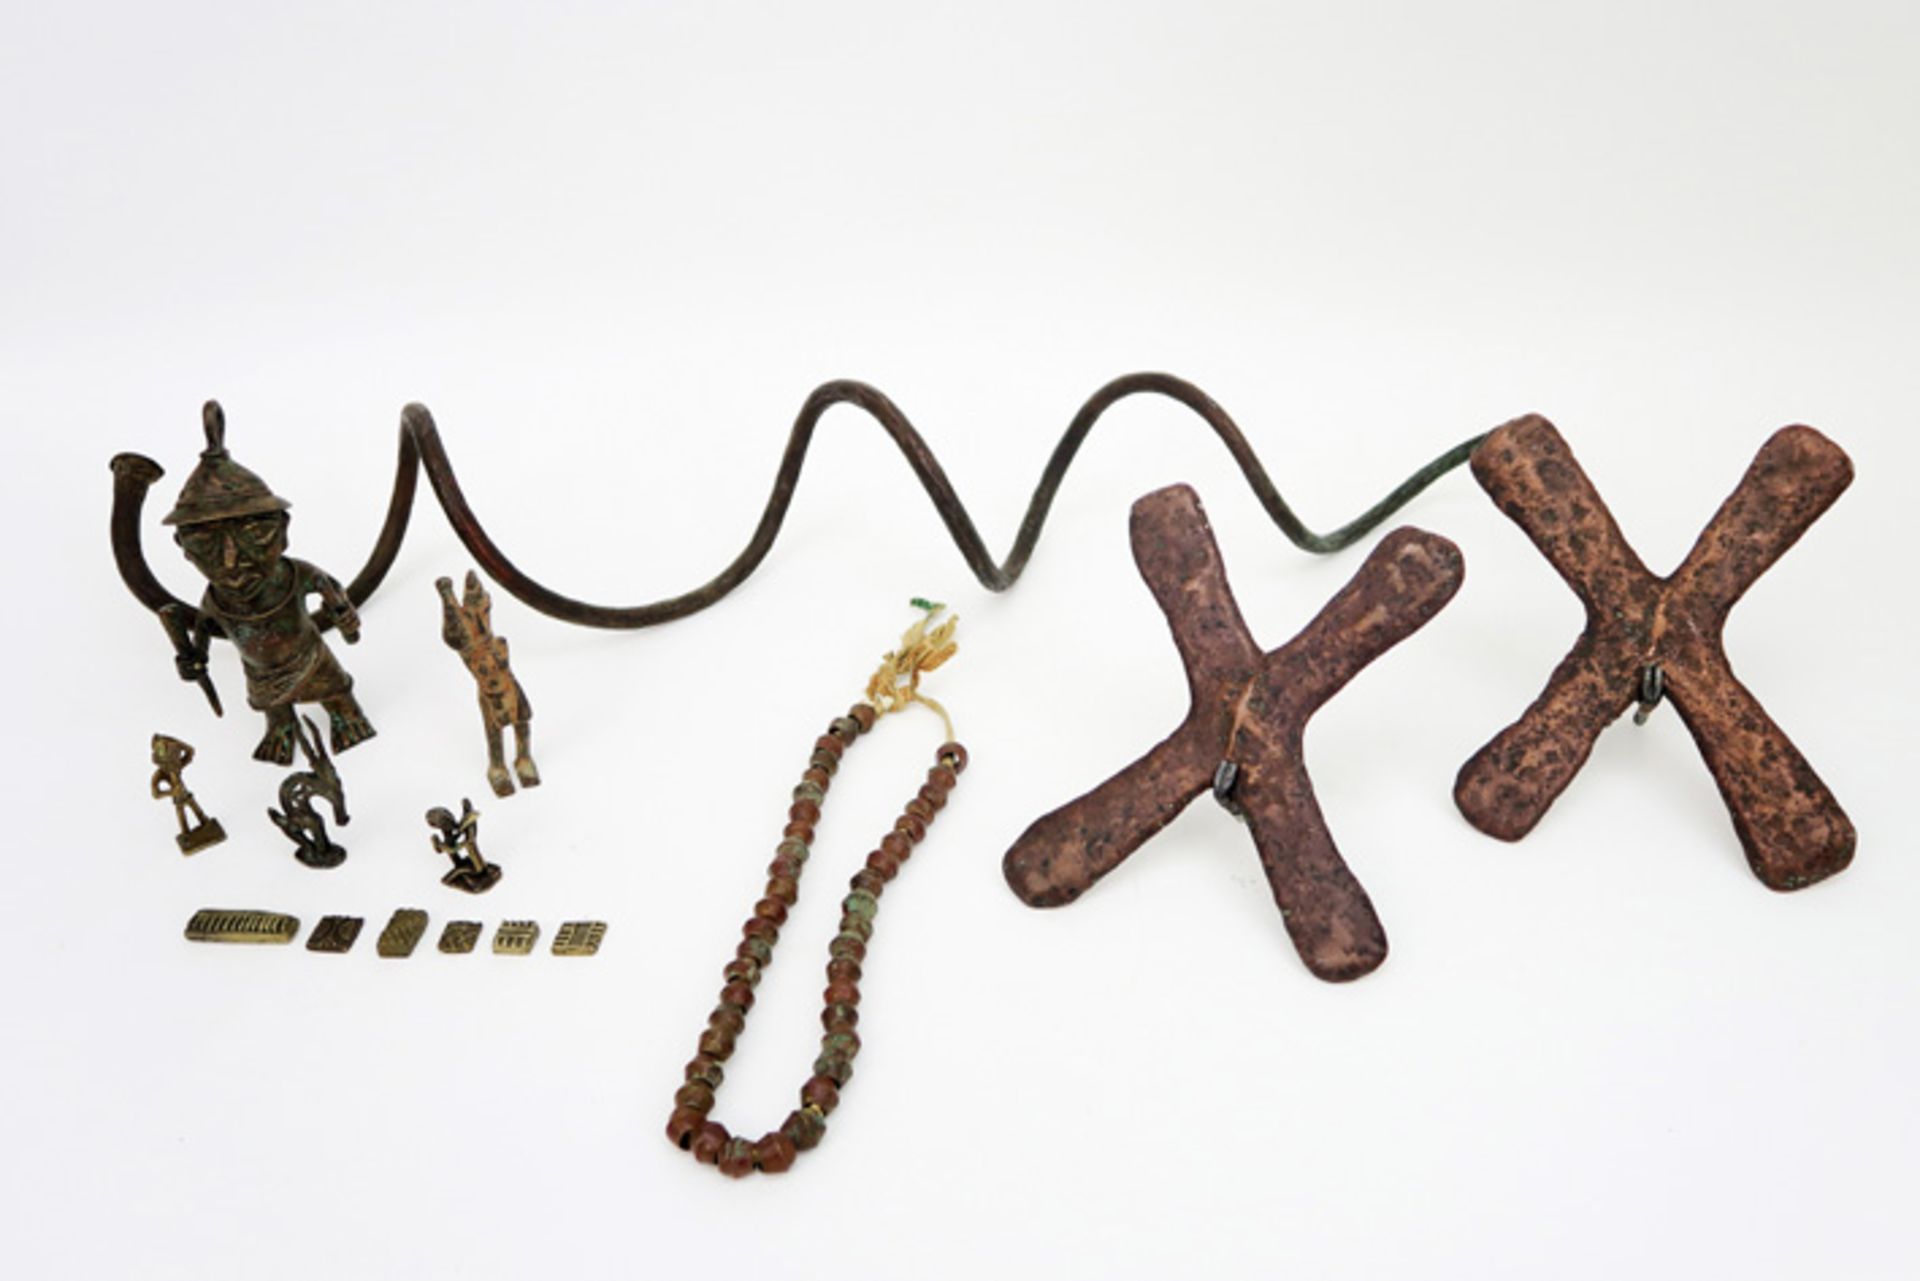 Lot Afirkaanse items in een bronslegering waaronder twee zgn "Katanga" - kruisen en een slangenvorm,